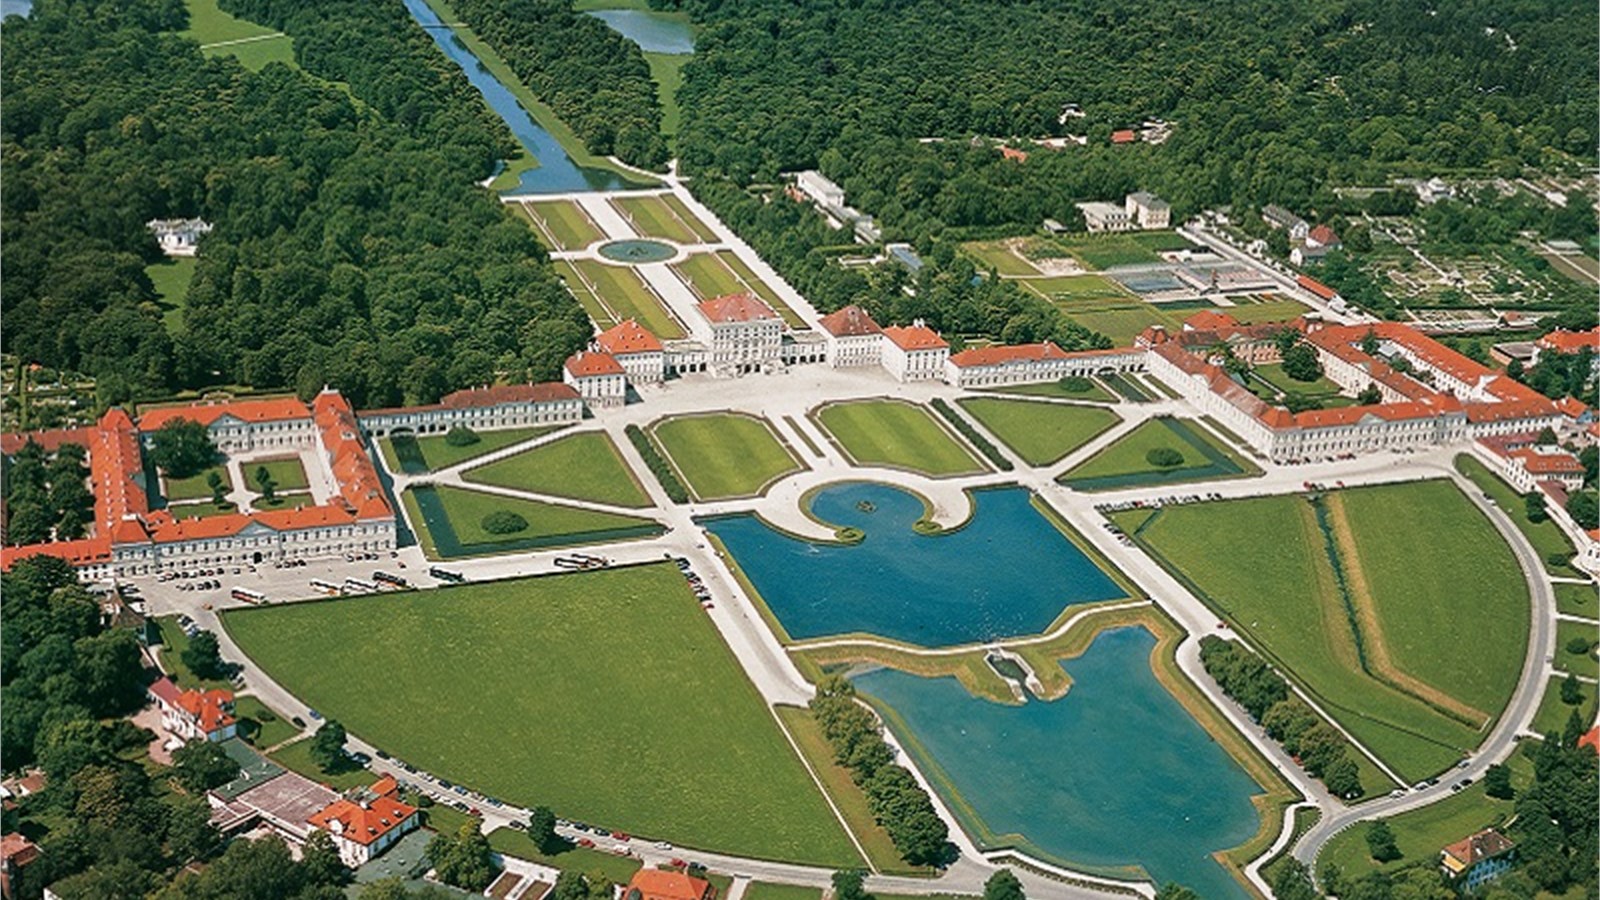 Дворец нимфенбург в мюнхене